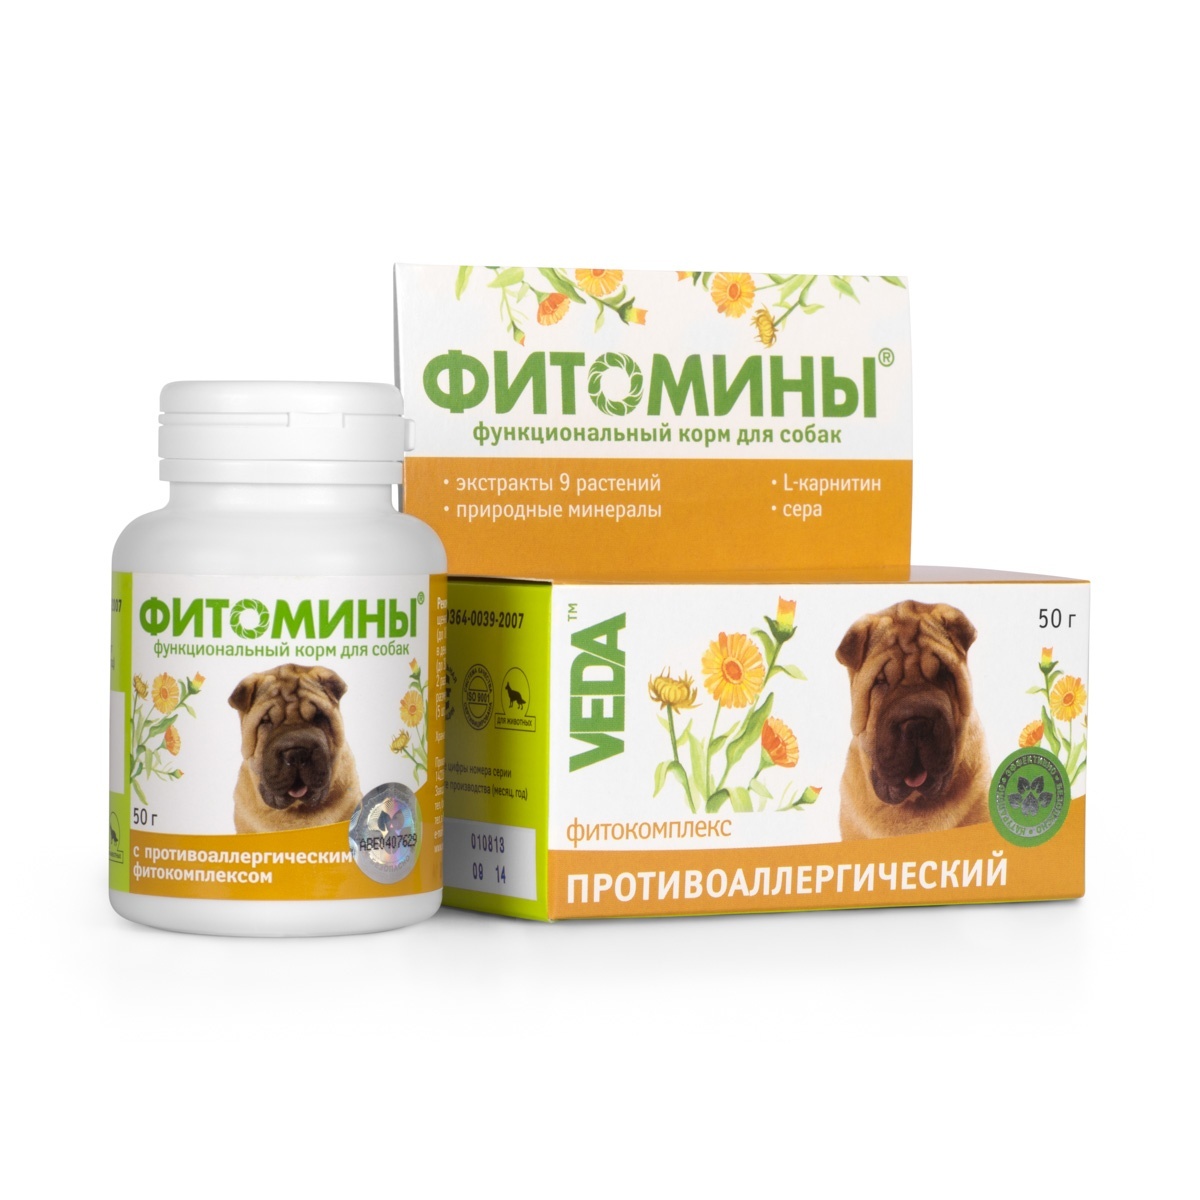 фитомины для собак от аллергии 100таб 1 Веда Веда фитомины от аллергии для собак, 100 таб. (50 г)